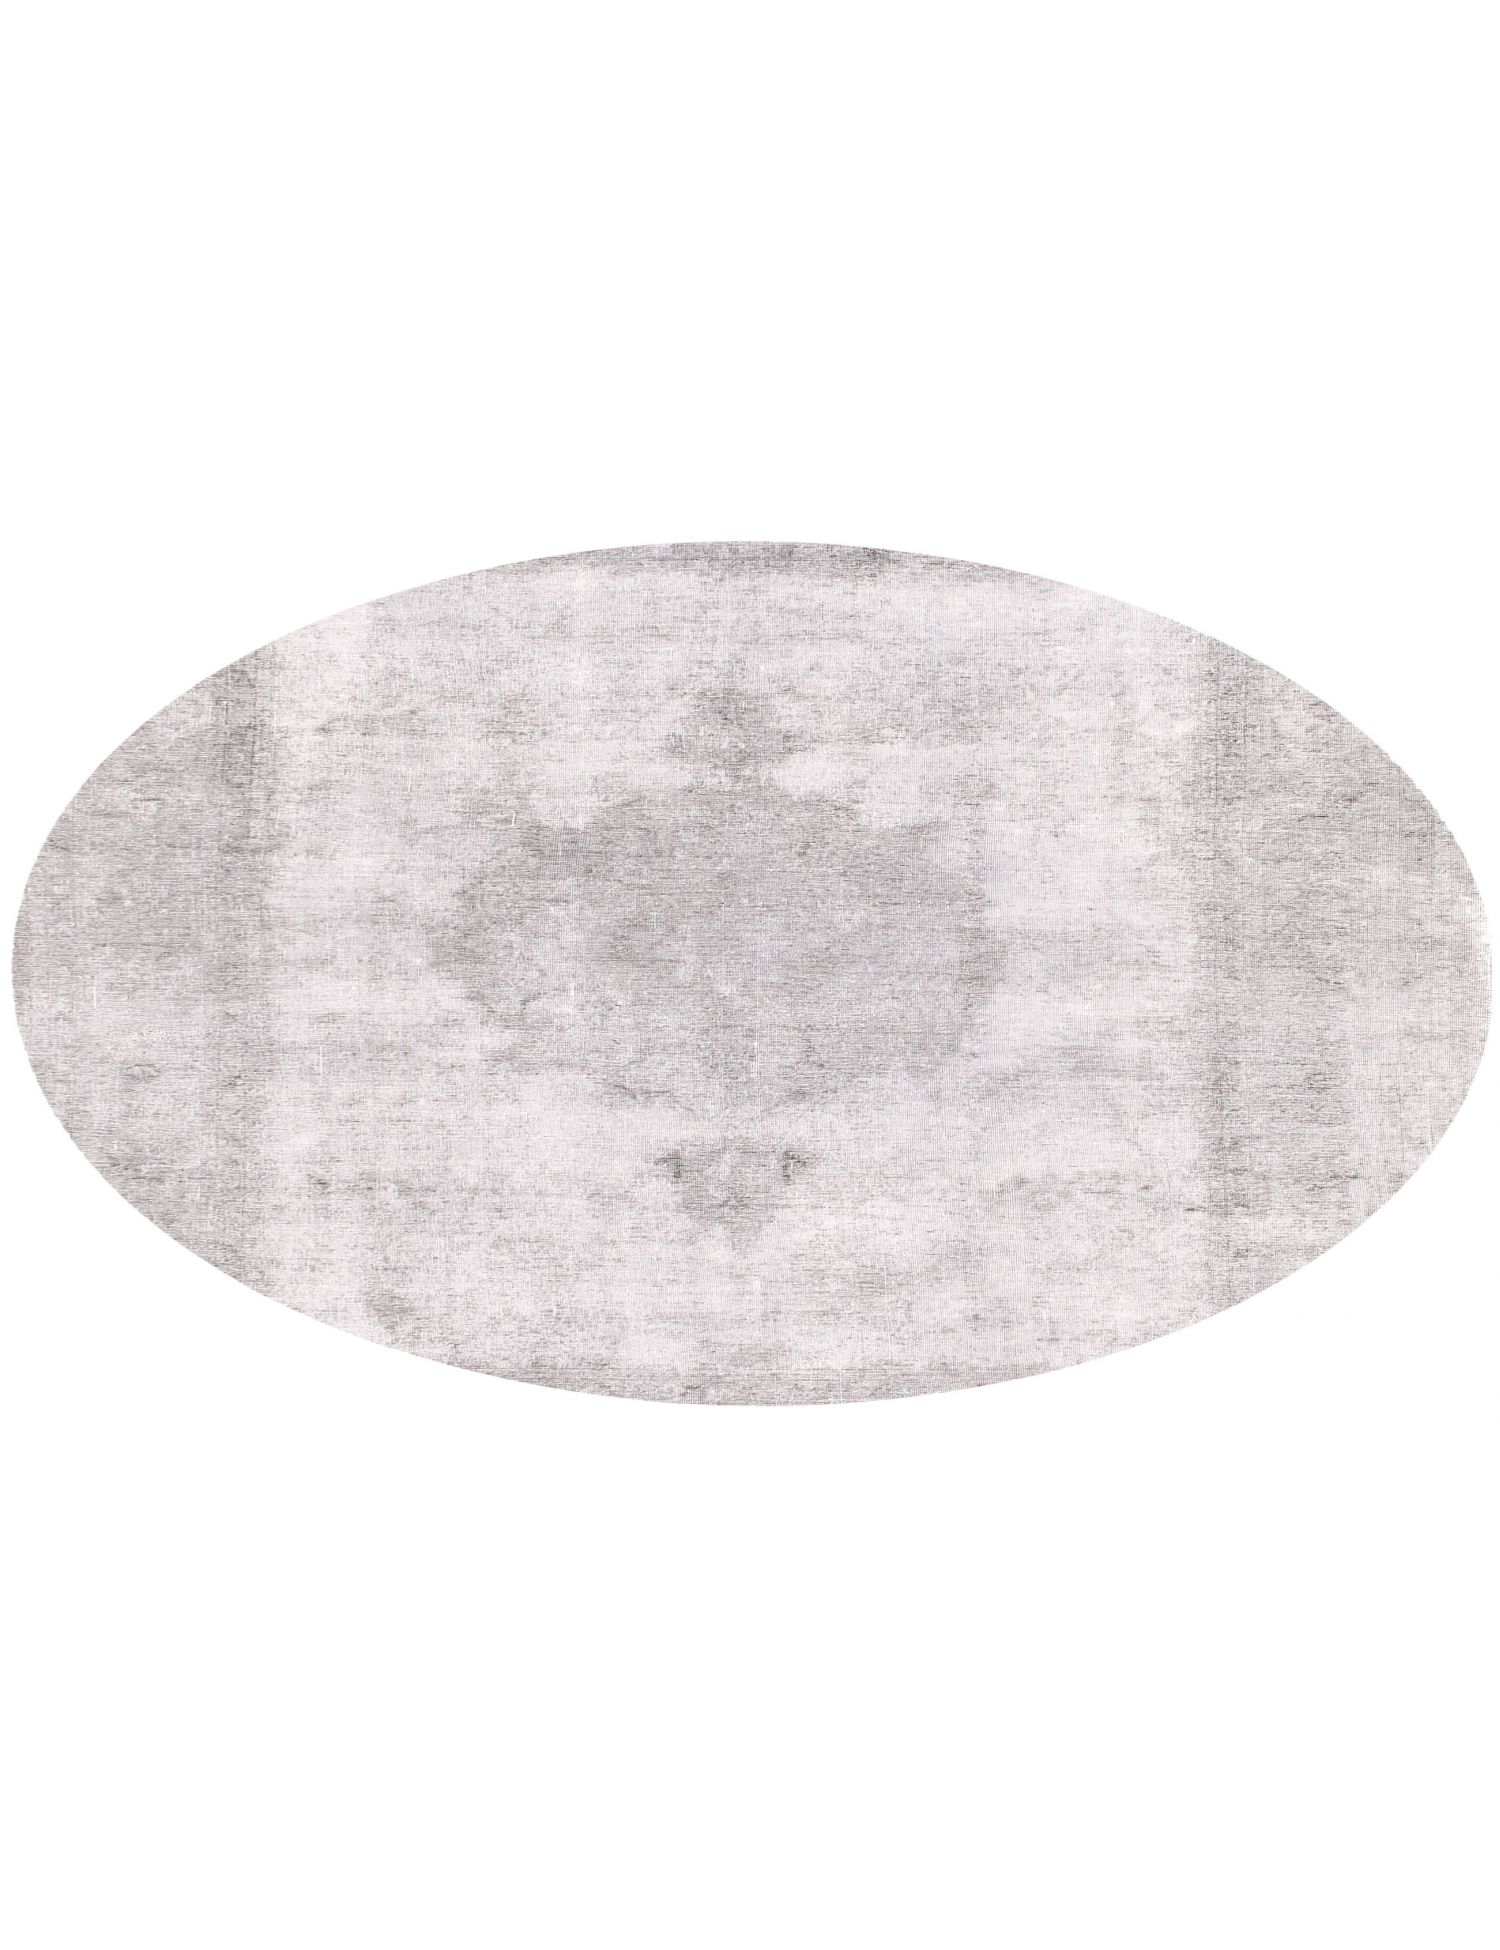 Rund  Vintage Teppich  grau <br/>240 x 240 cm